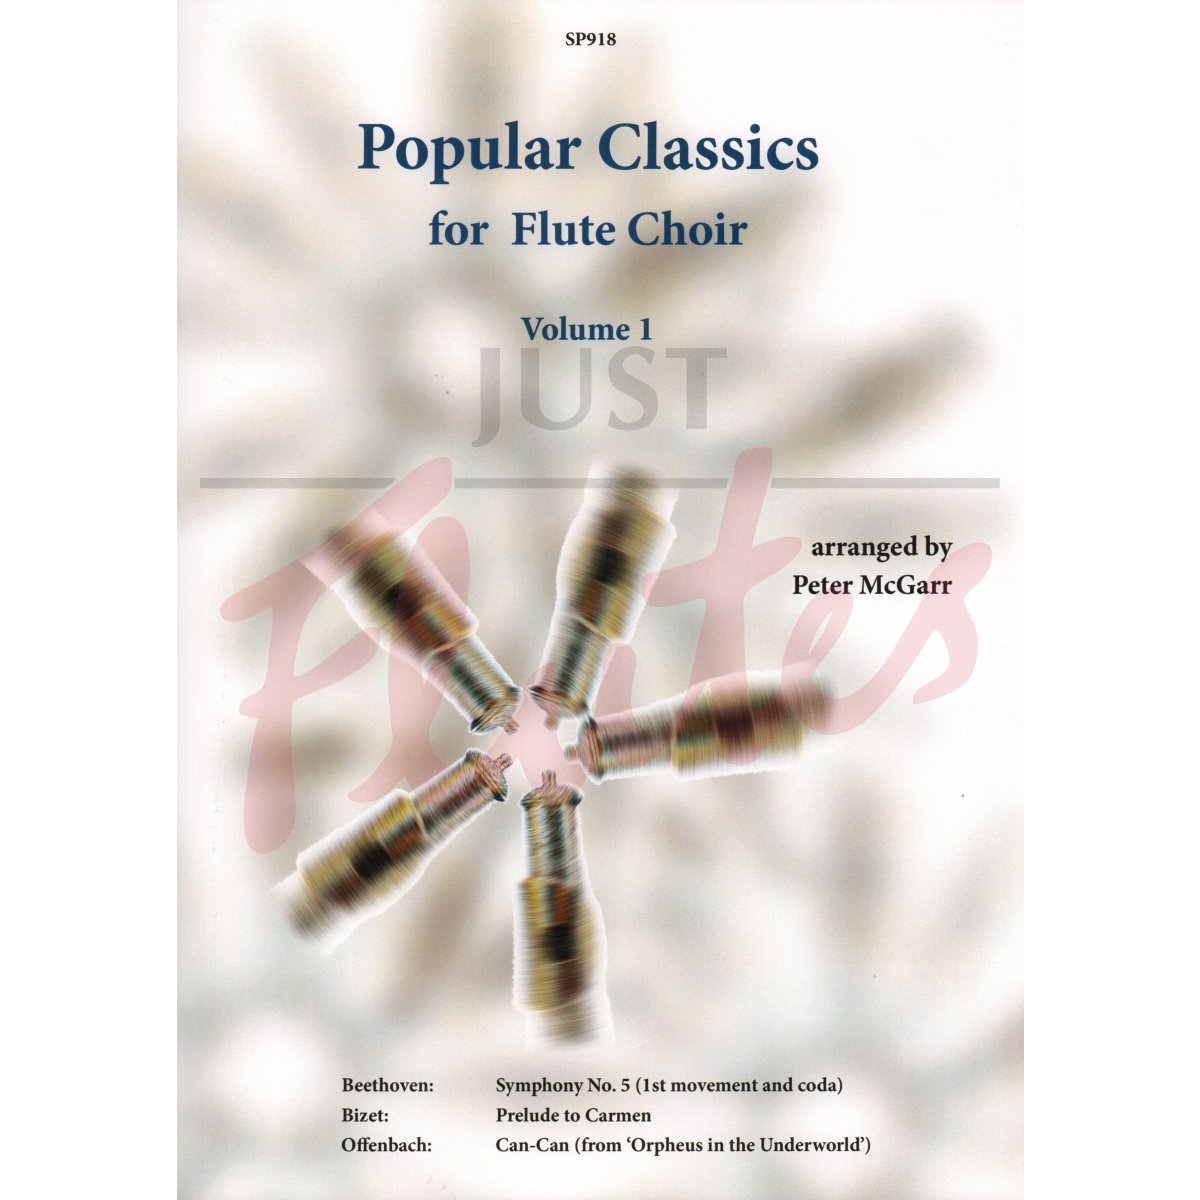 Popular Classics for Flute Choir